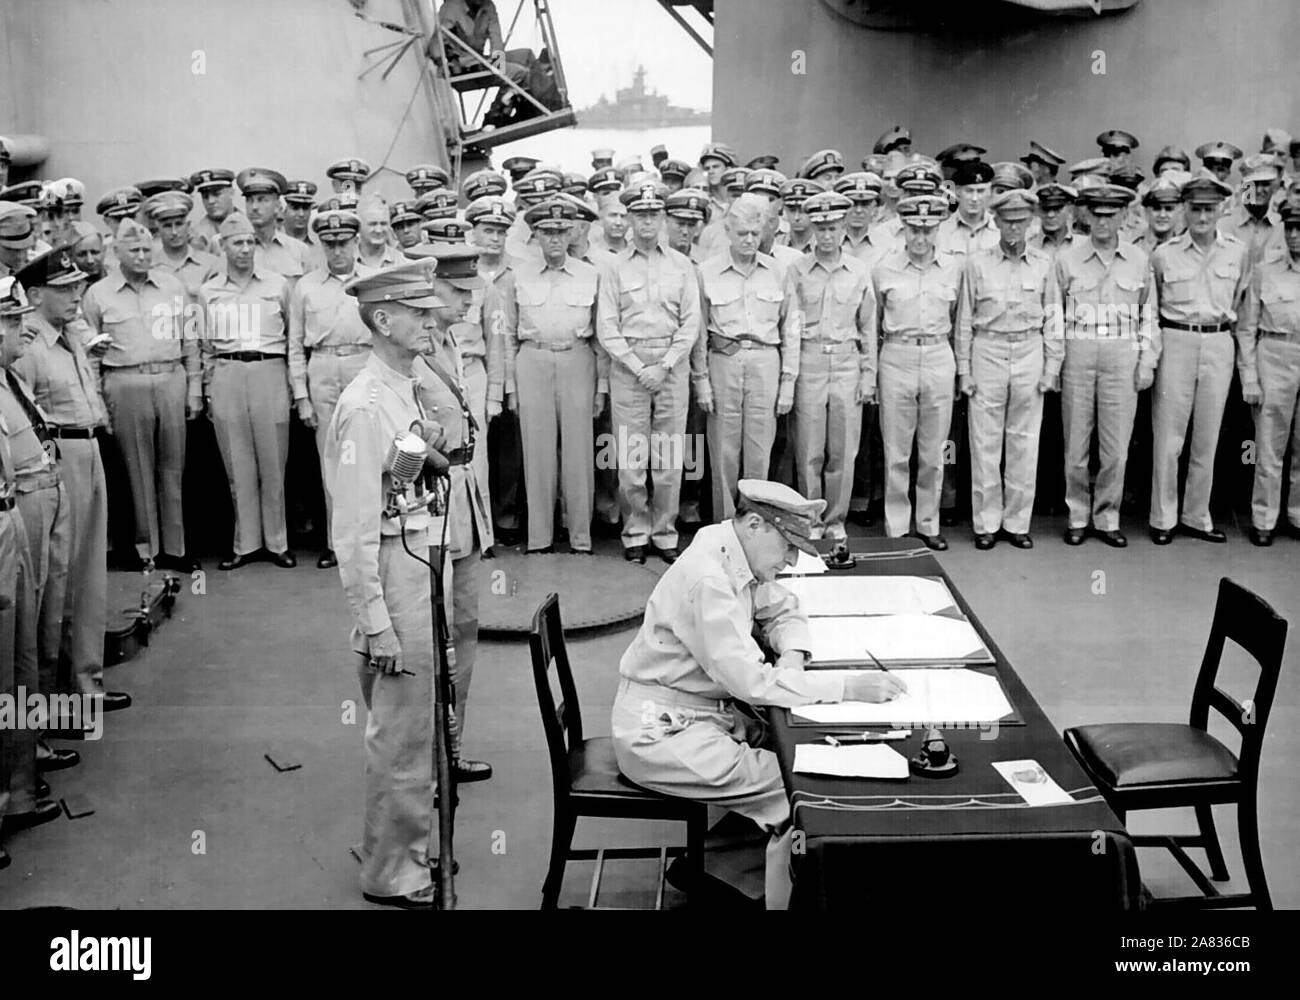 El General Douglas MacArthur signos como Comandante Supremo Aliado durante las ceremonias de rendición formal en el USS Missouri en la Bahía de Tokio. Detrás el General MacArthur son el Teniente General Jonathan Wainwright y el Teniente General A. E. Percival. Septiembre 2, 1945 Foto de stock